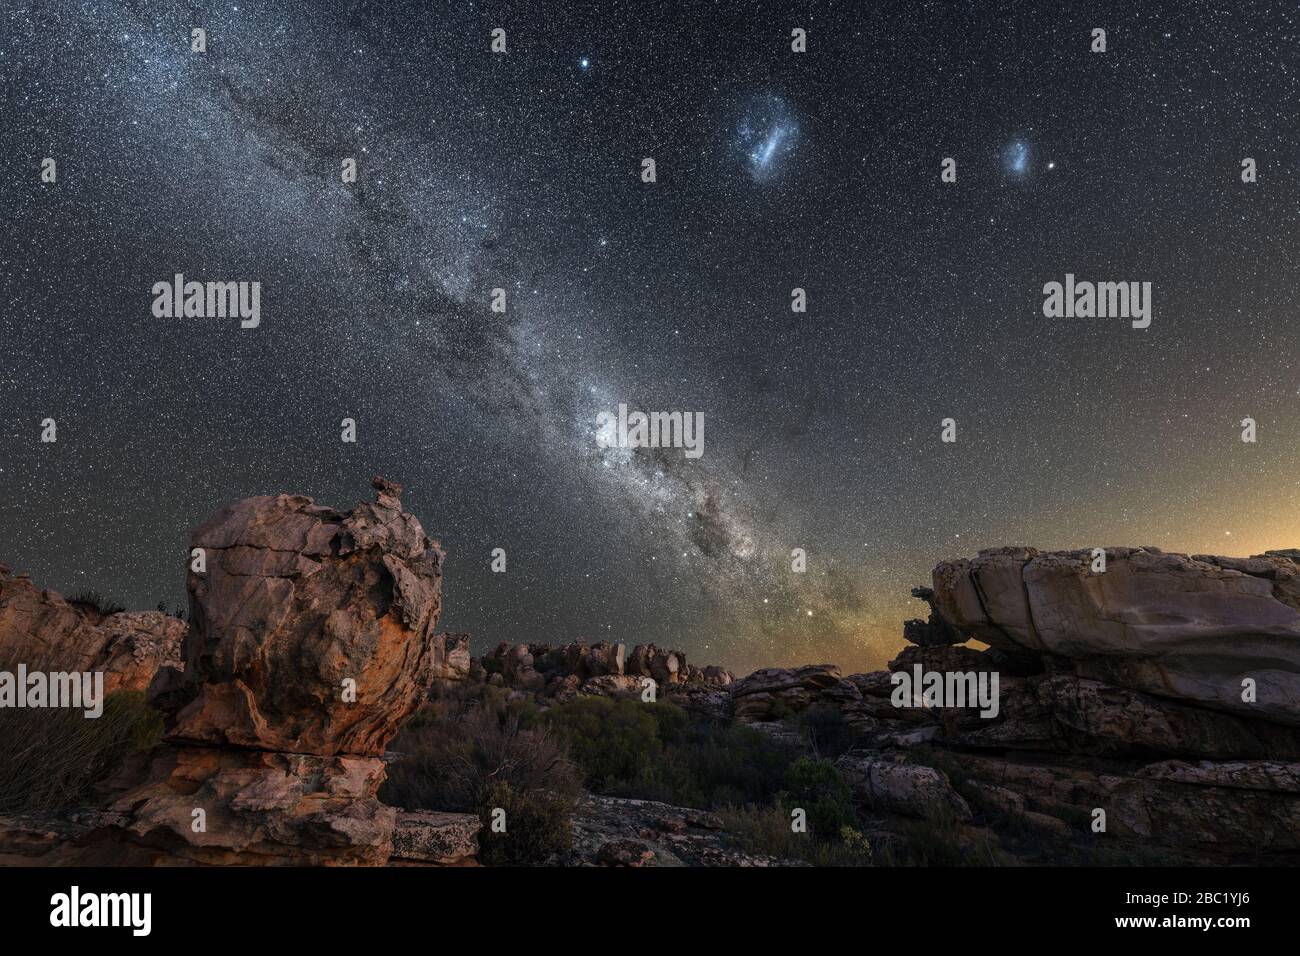 Una hermosa fotografía del cielo nocturno que muestra la vía Láctea y el centro galáctico, las Nubes Magallanes, con rocas dramáticas en primer plano, tomadas en el Foto de stock